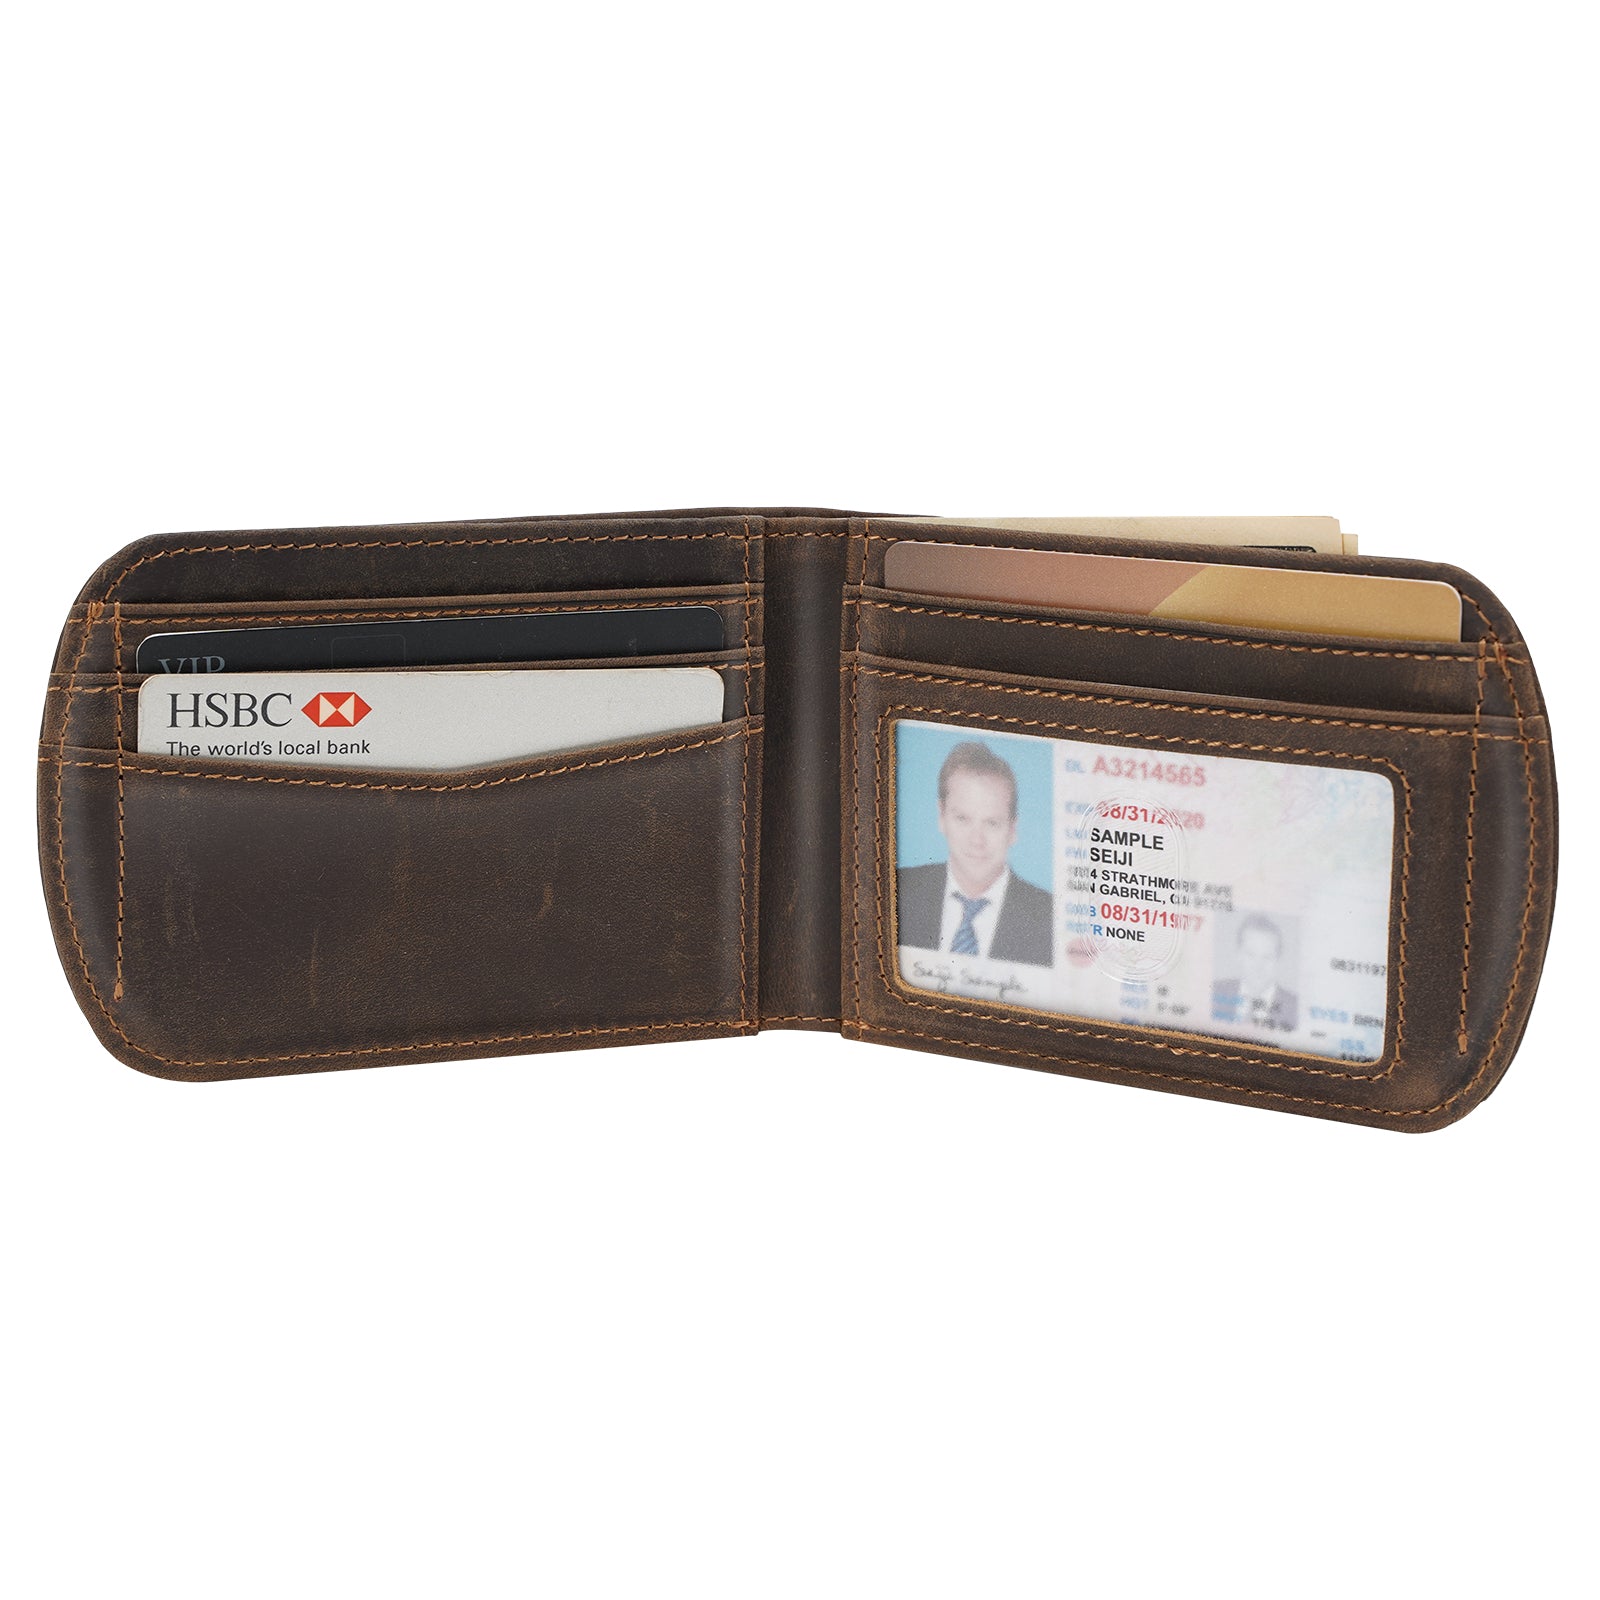 Hammonds Flycatcher Genuine Leather Rfid Blocking Passport Holder Cover Case Travel Wallet